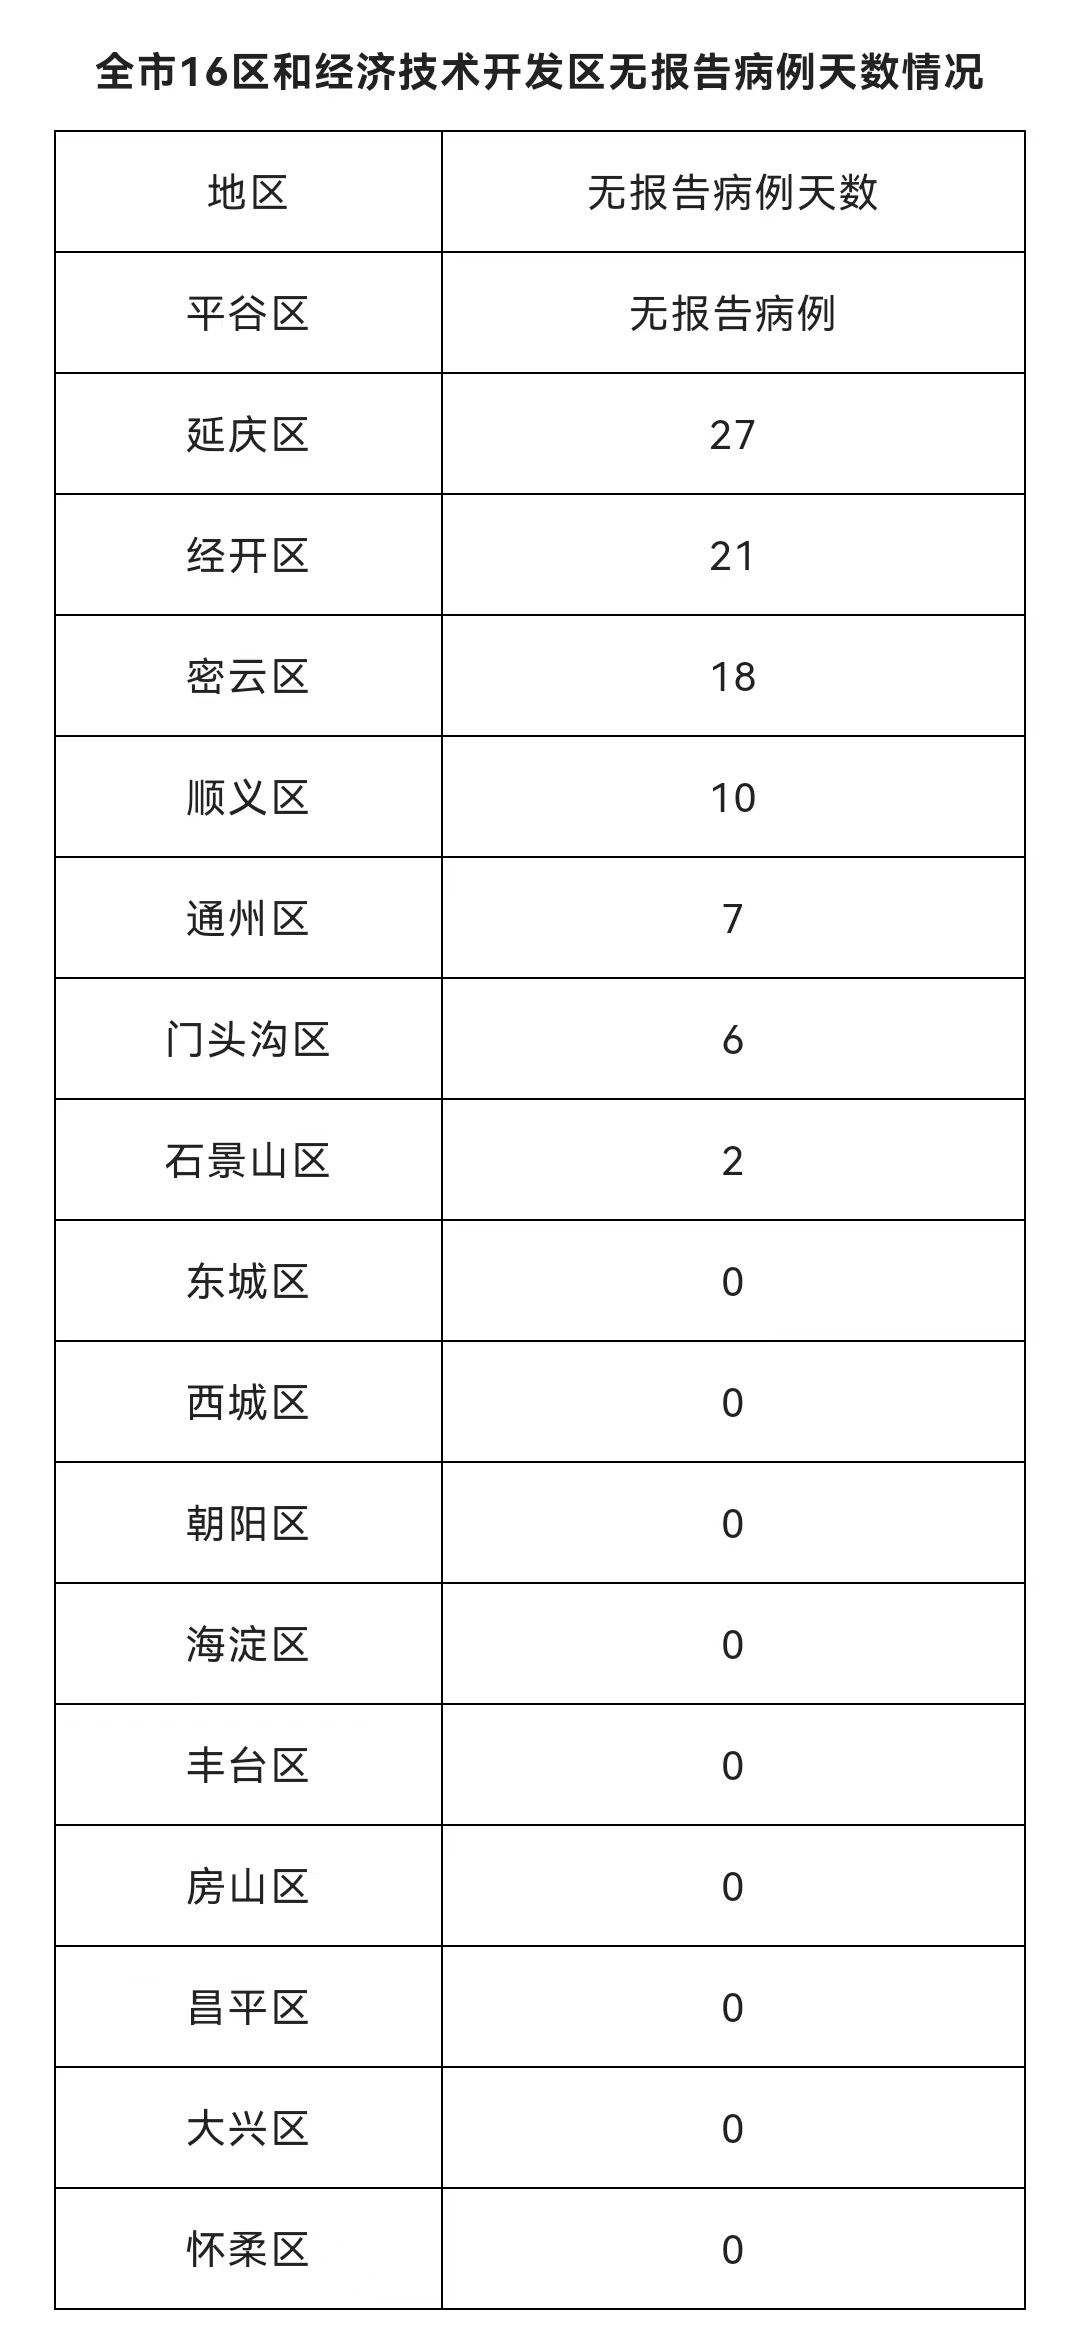 北京5月22日新增83例本土确诊病例和16例本土无症状感染者 治愈出院42例